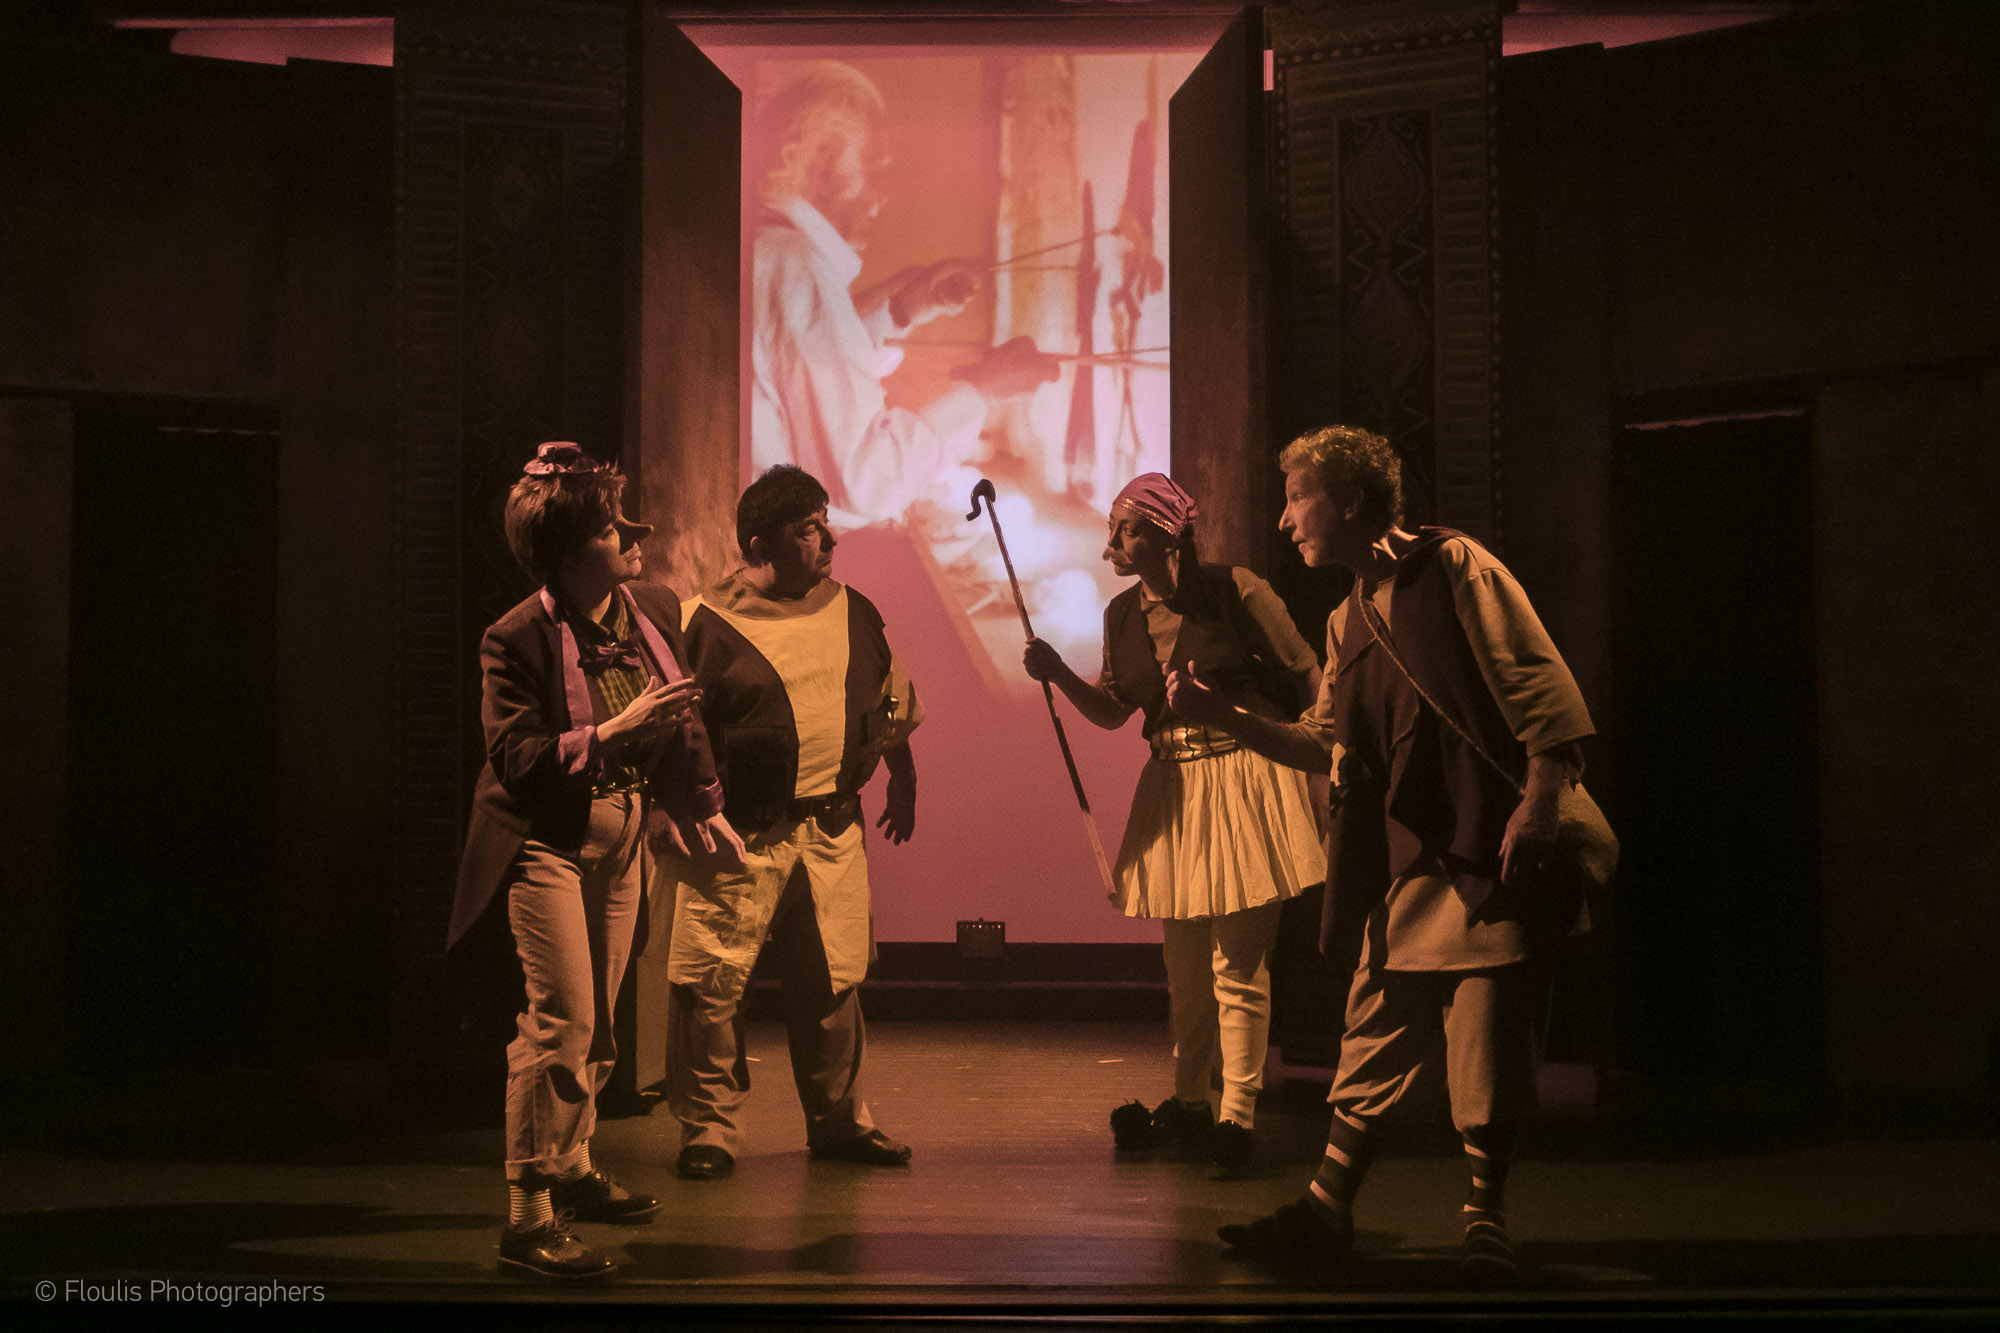 "Ιστορίες του παππού Αριστοφάνη" από το Δημοτικό Θέατρο Τρικάλων